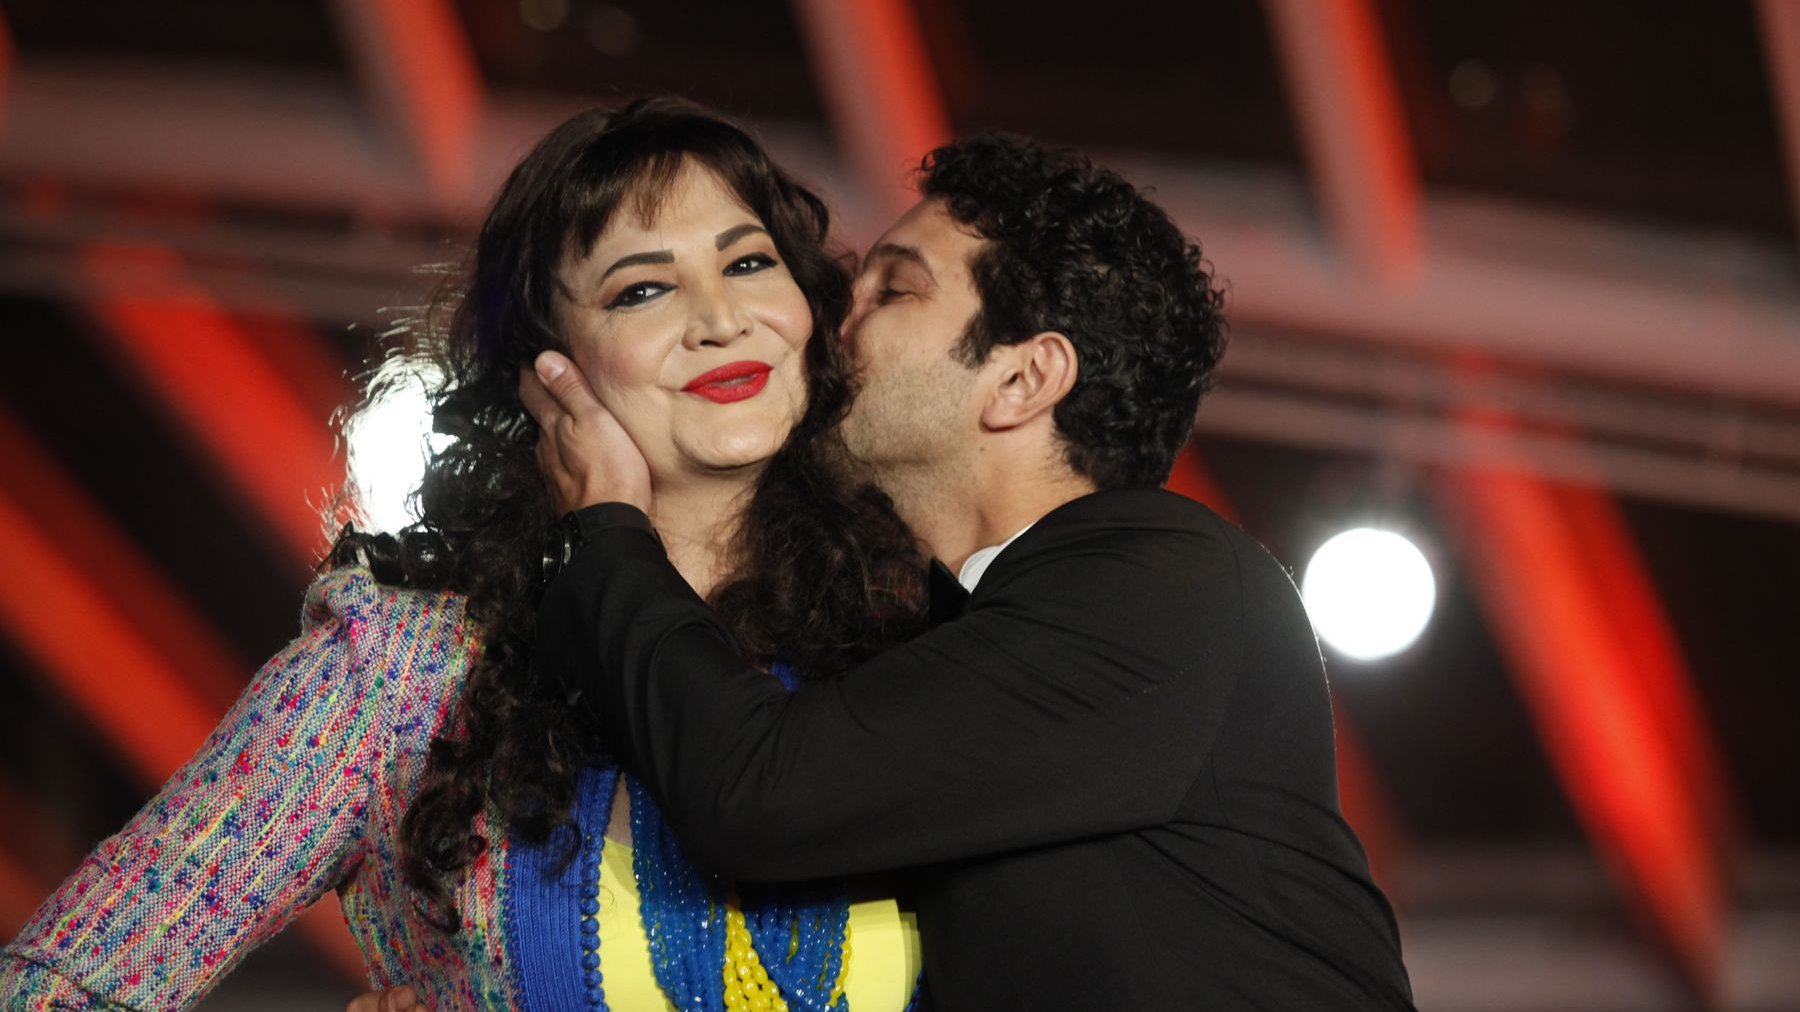 Anas Elbaz a plaqué, lors de la cérémonie de clôture, un gros baiser sur la joue de Noor.
